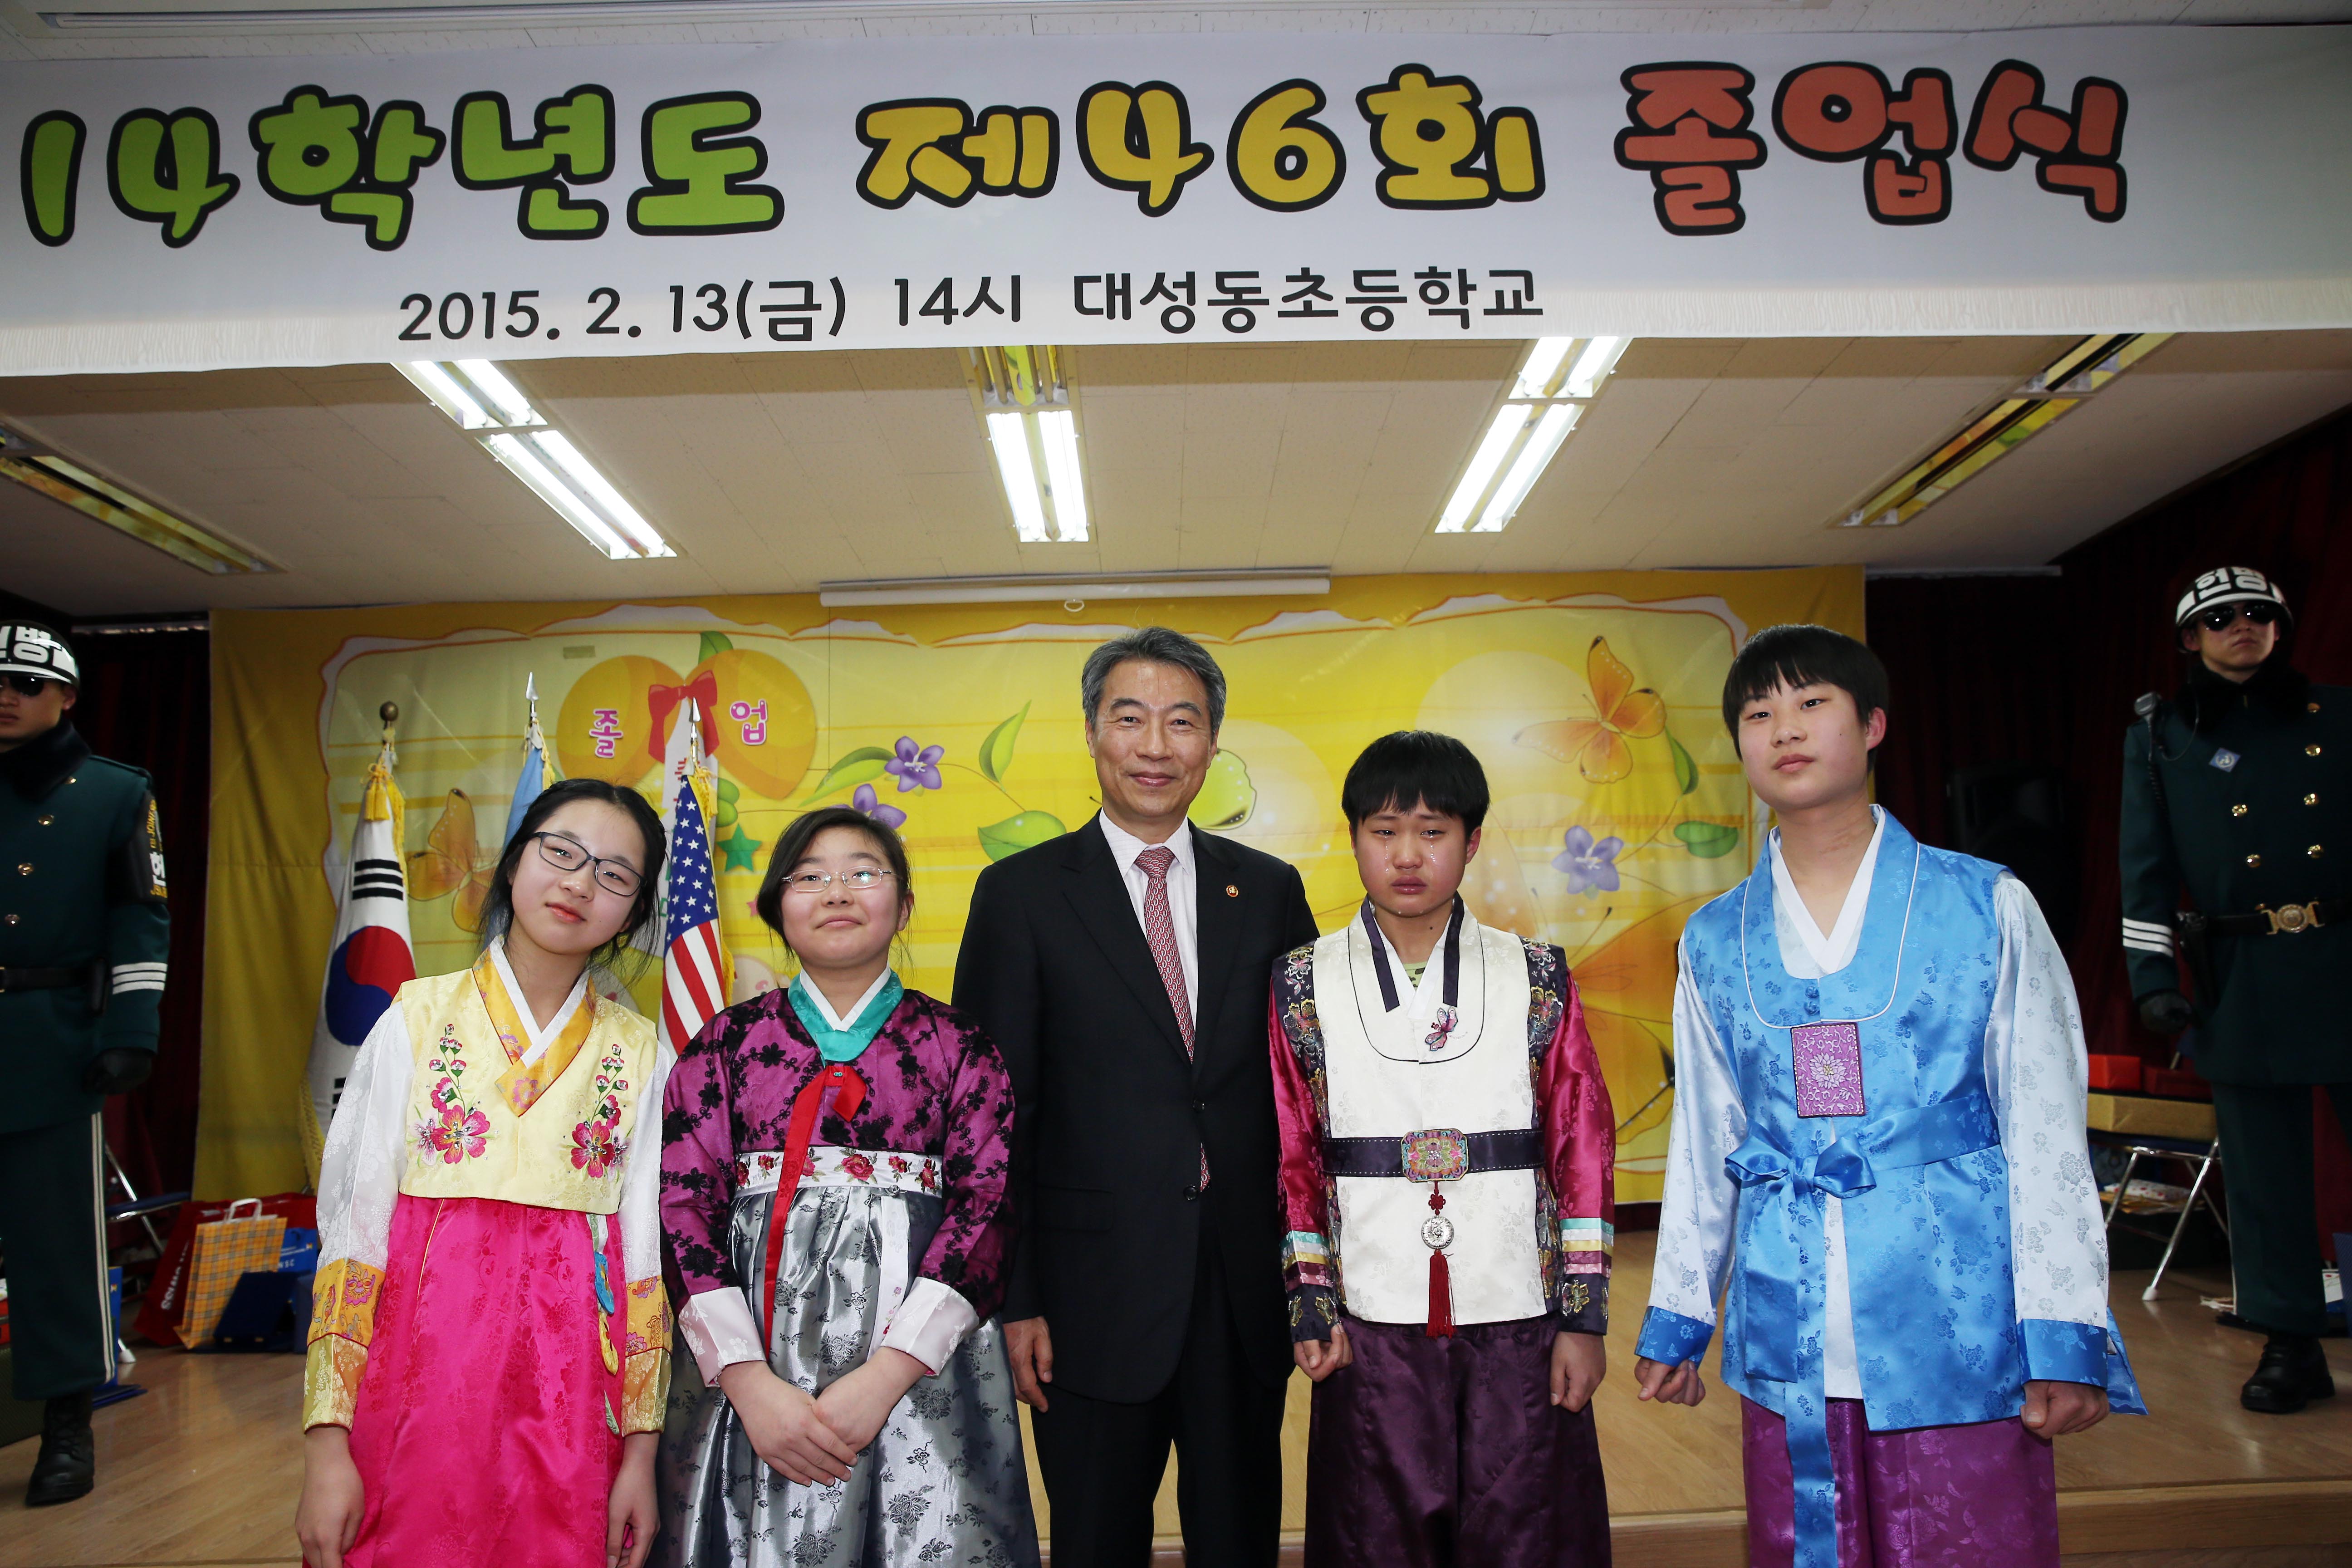 정종섭 장관, 대성동(DMZ) 초등학교 졸업식 참석